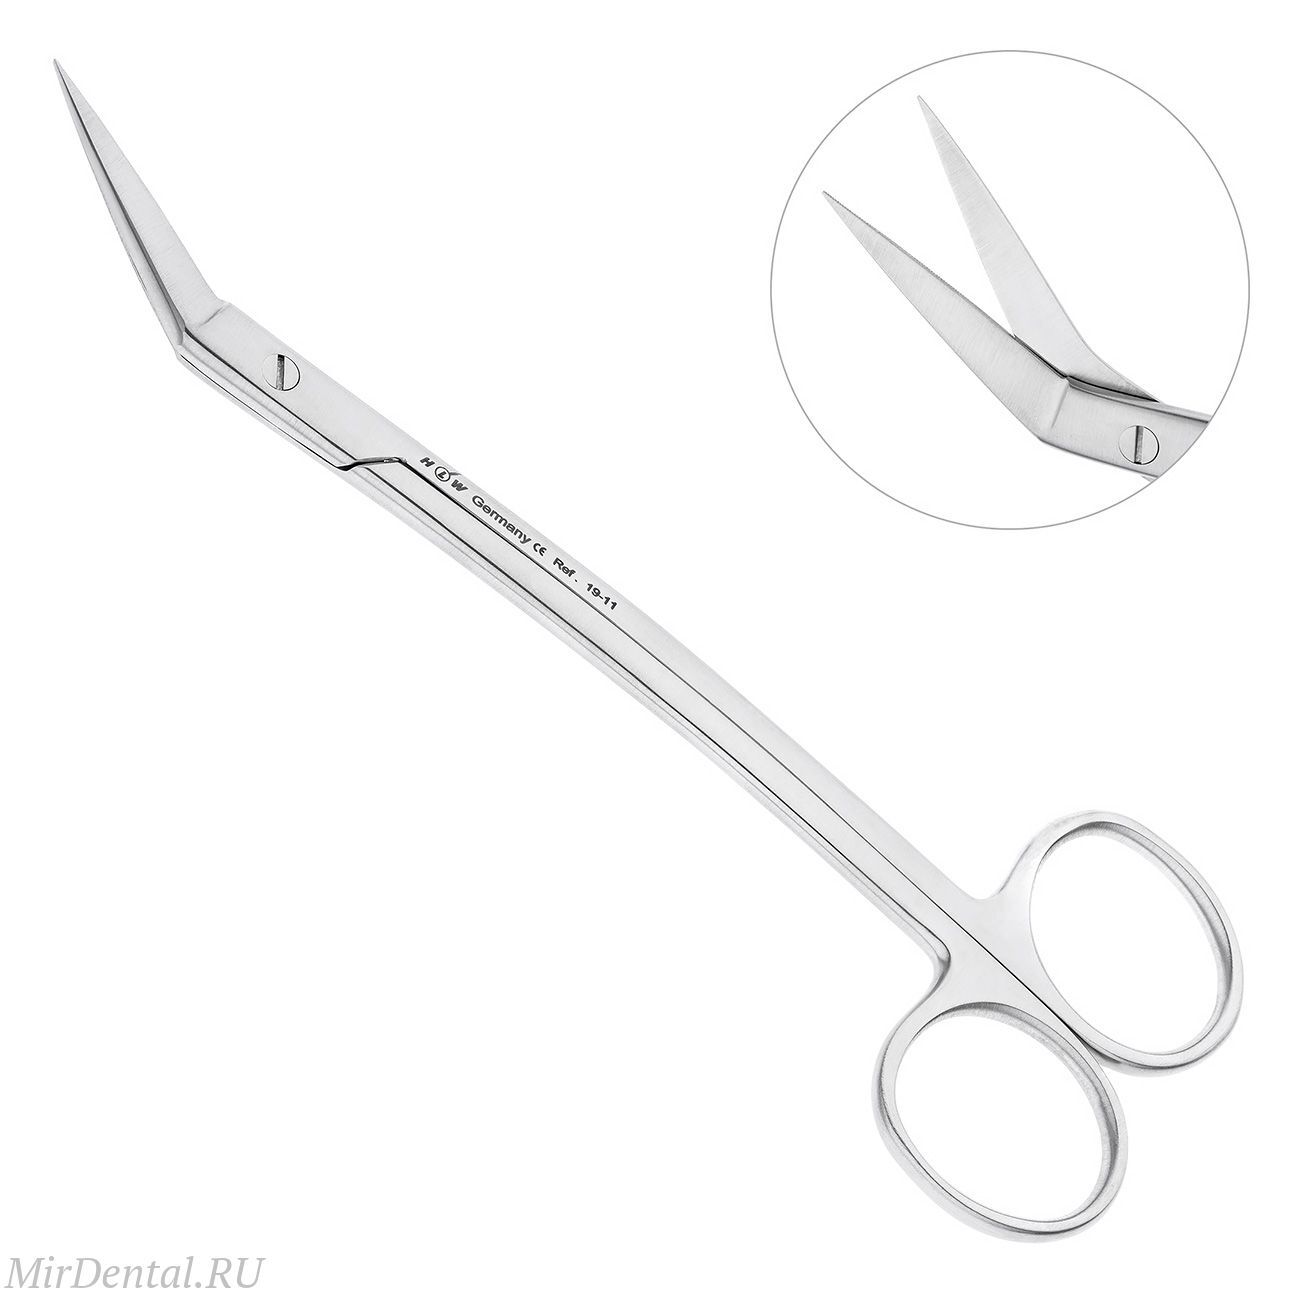 Ножницы хирургические угловые Goldmann-Fox, 16 см, 19-11*